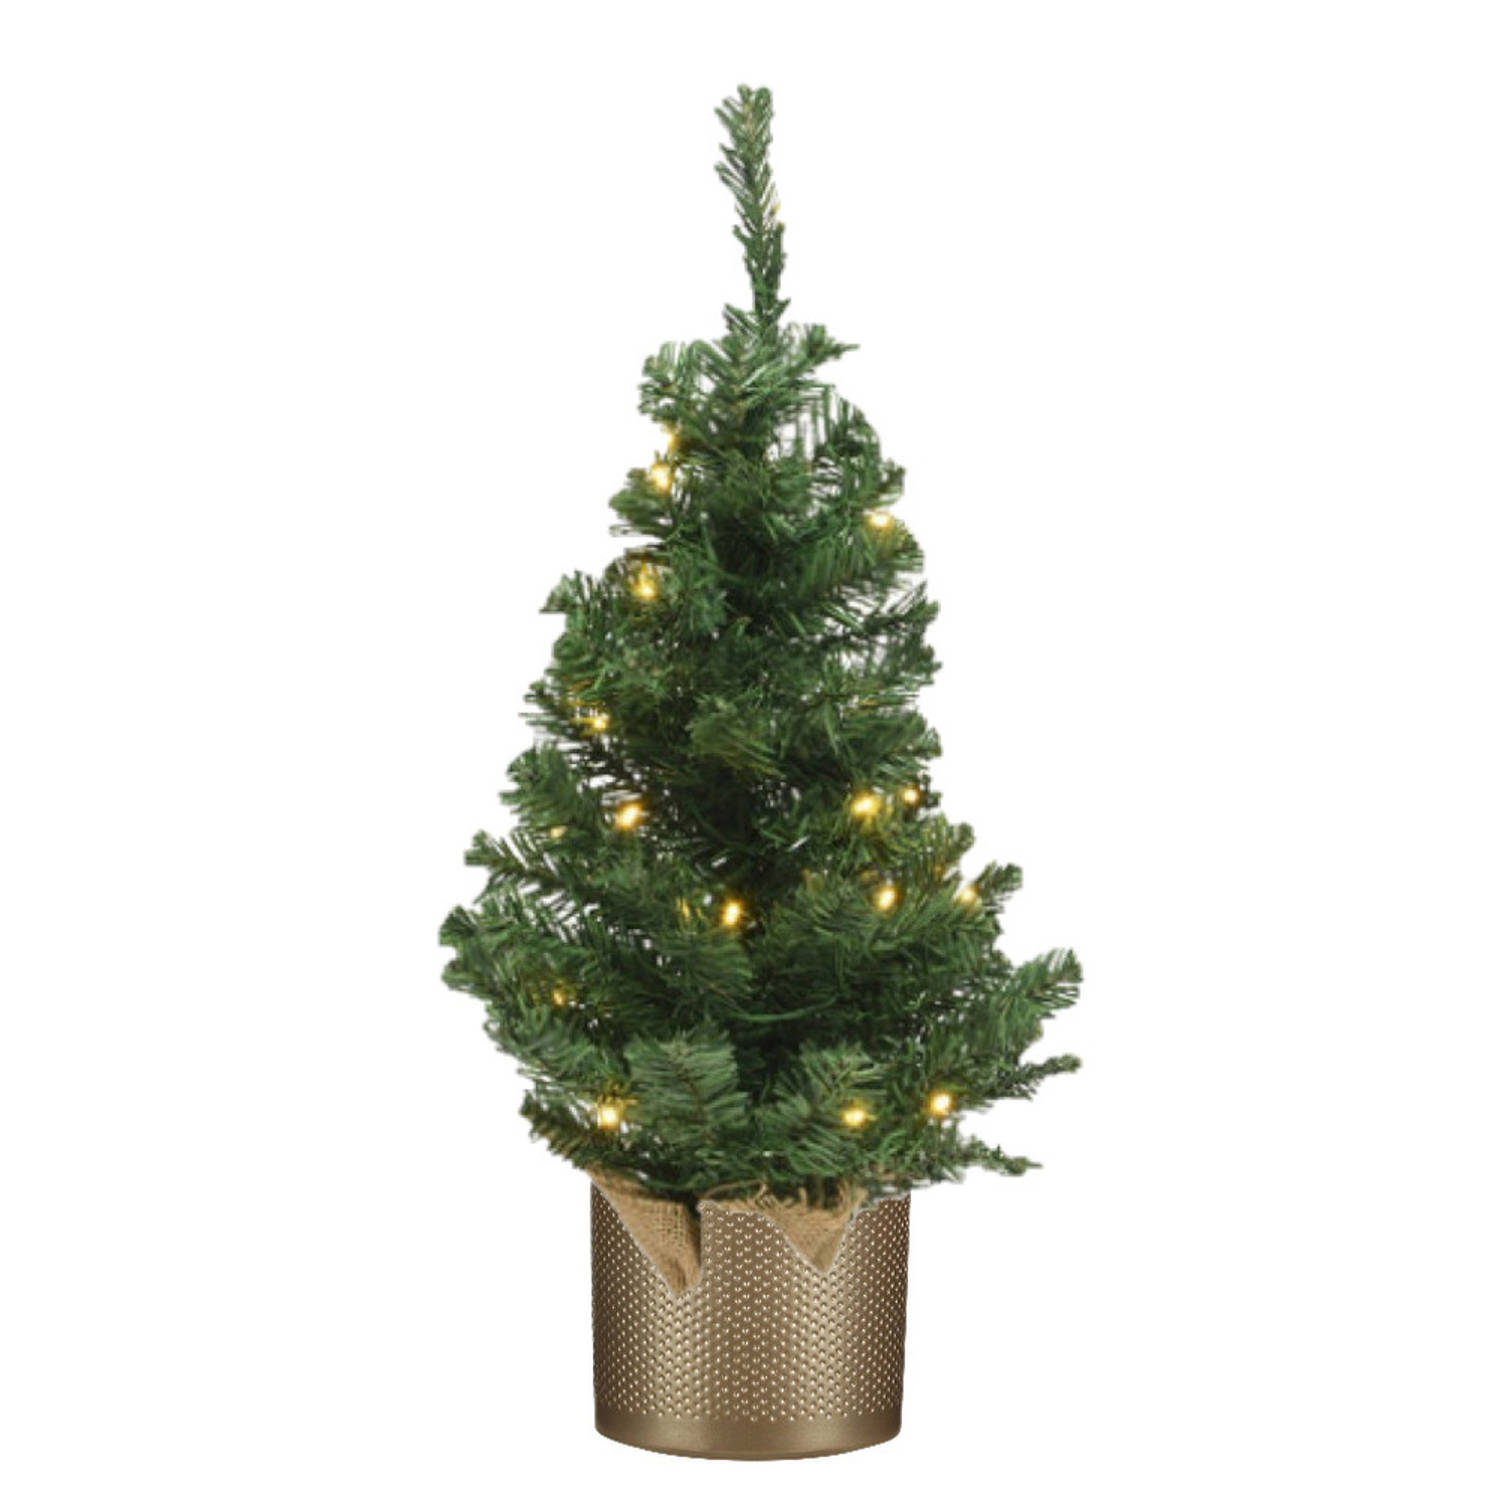 Kunst kerstboom-kunstboom 75 cm met verlichting inclusief gouden pot Kunstkerstboom